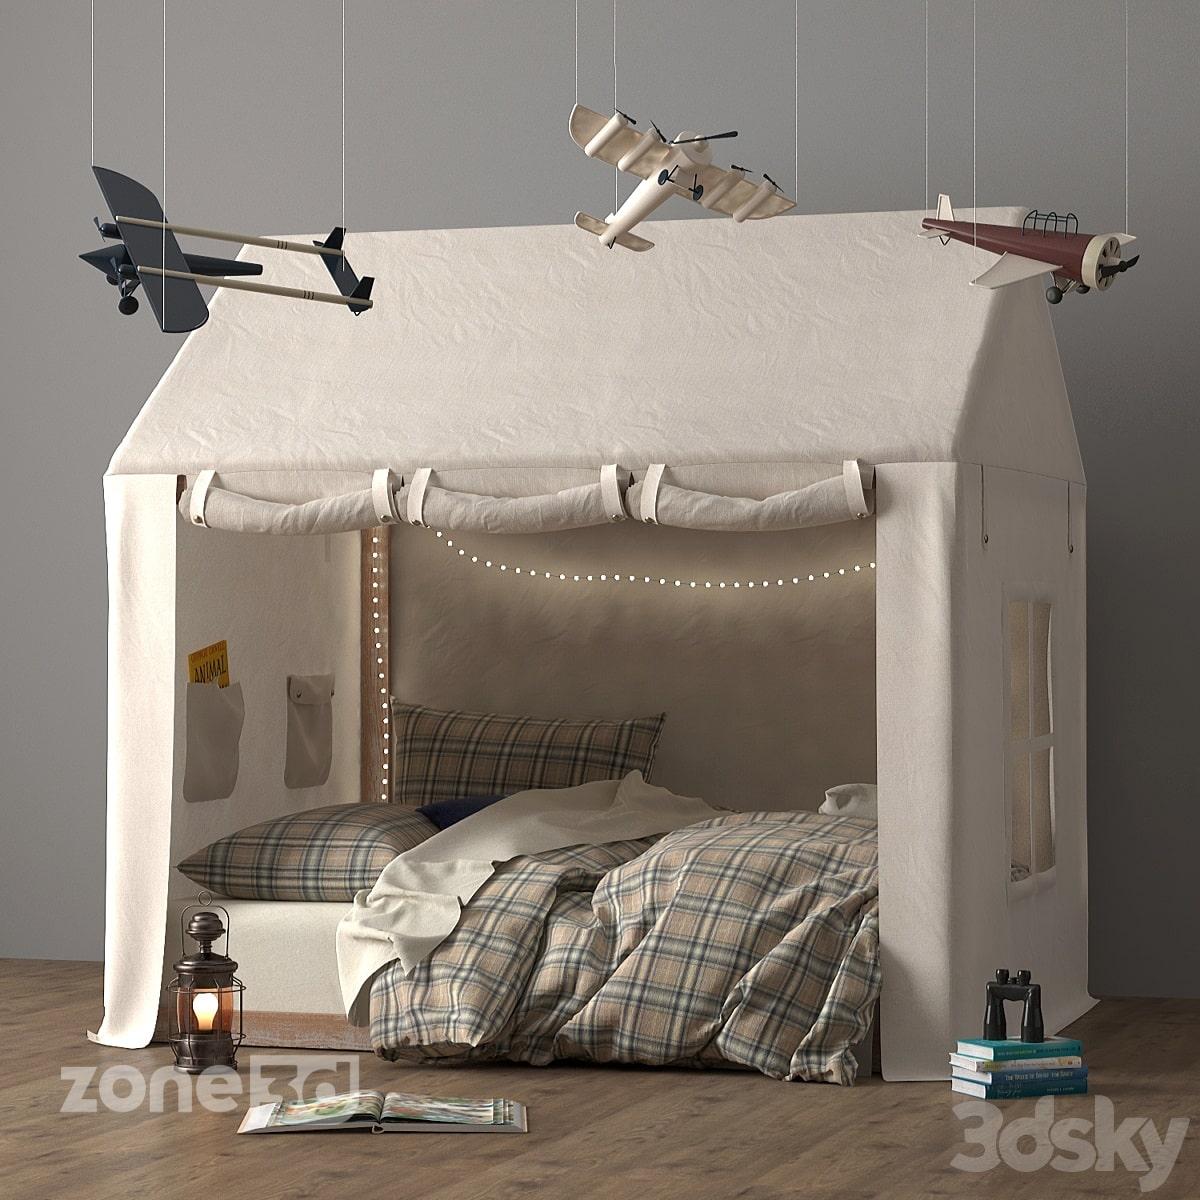 آبجکت تخت خواب اتاق کودک با چادر پارچه ای و ریسه نوری مدل NATL TWIN